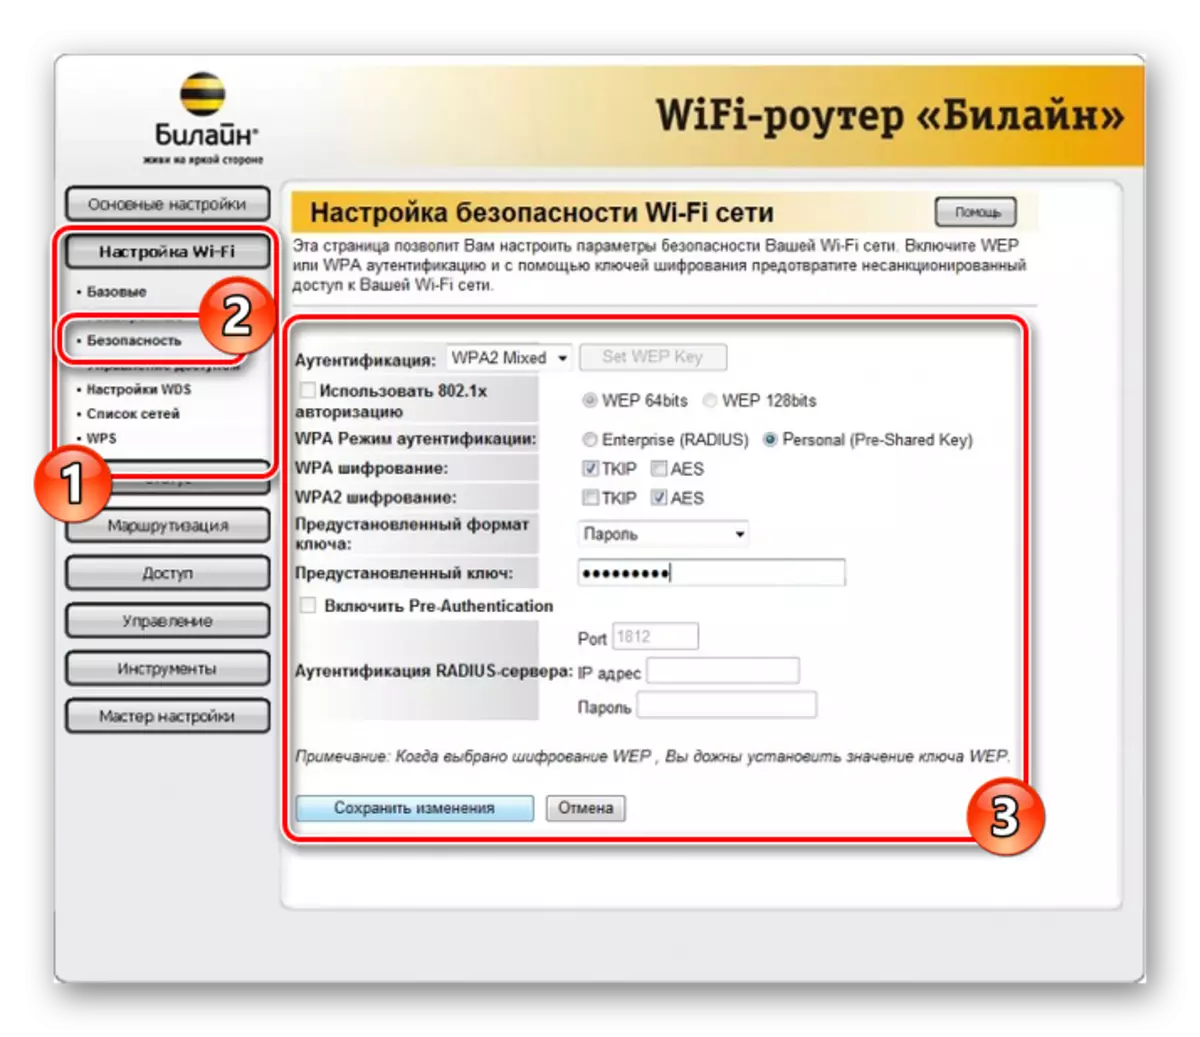 Wi-Fi Beeline Router இல் பாதுகாப்பு அமைப்புகள்